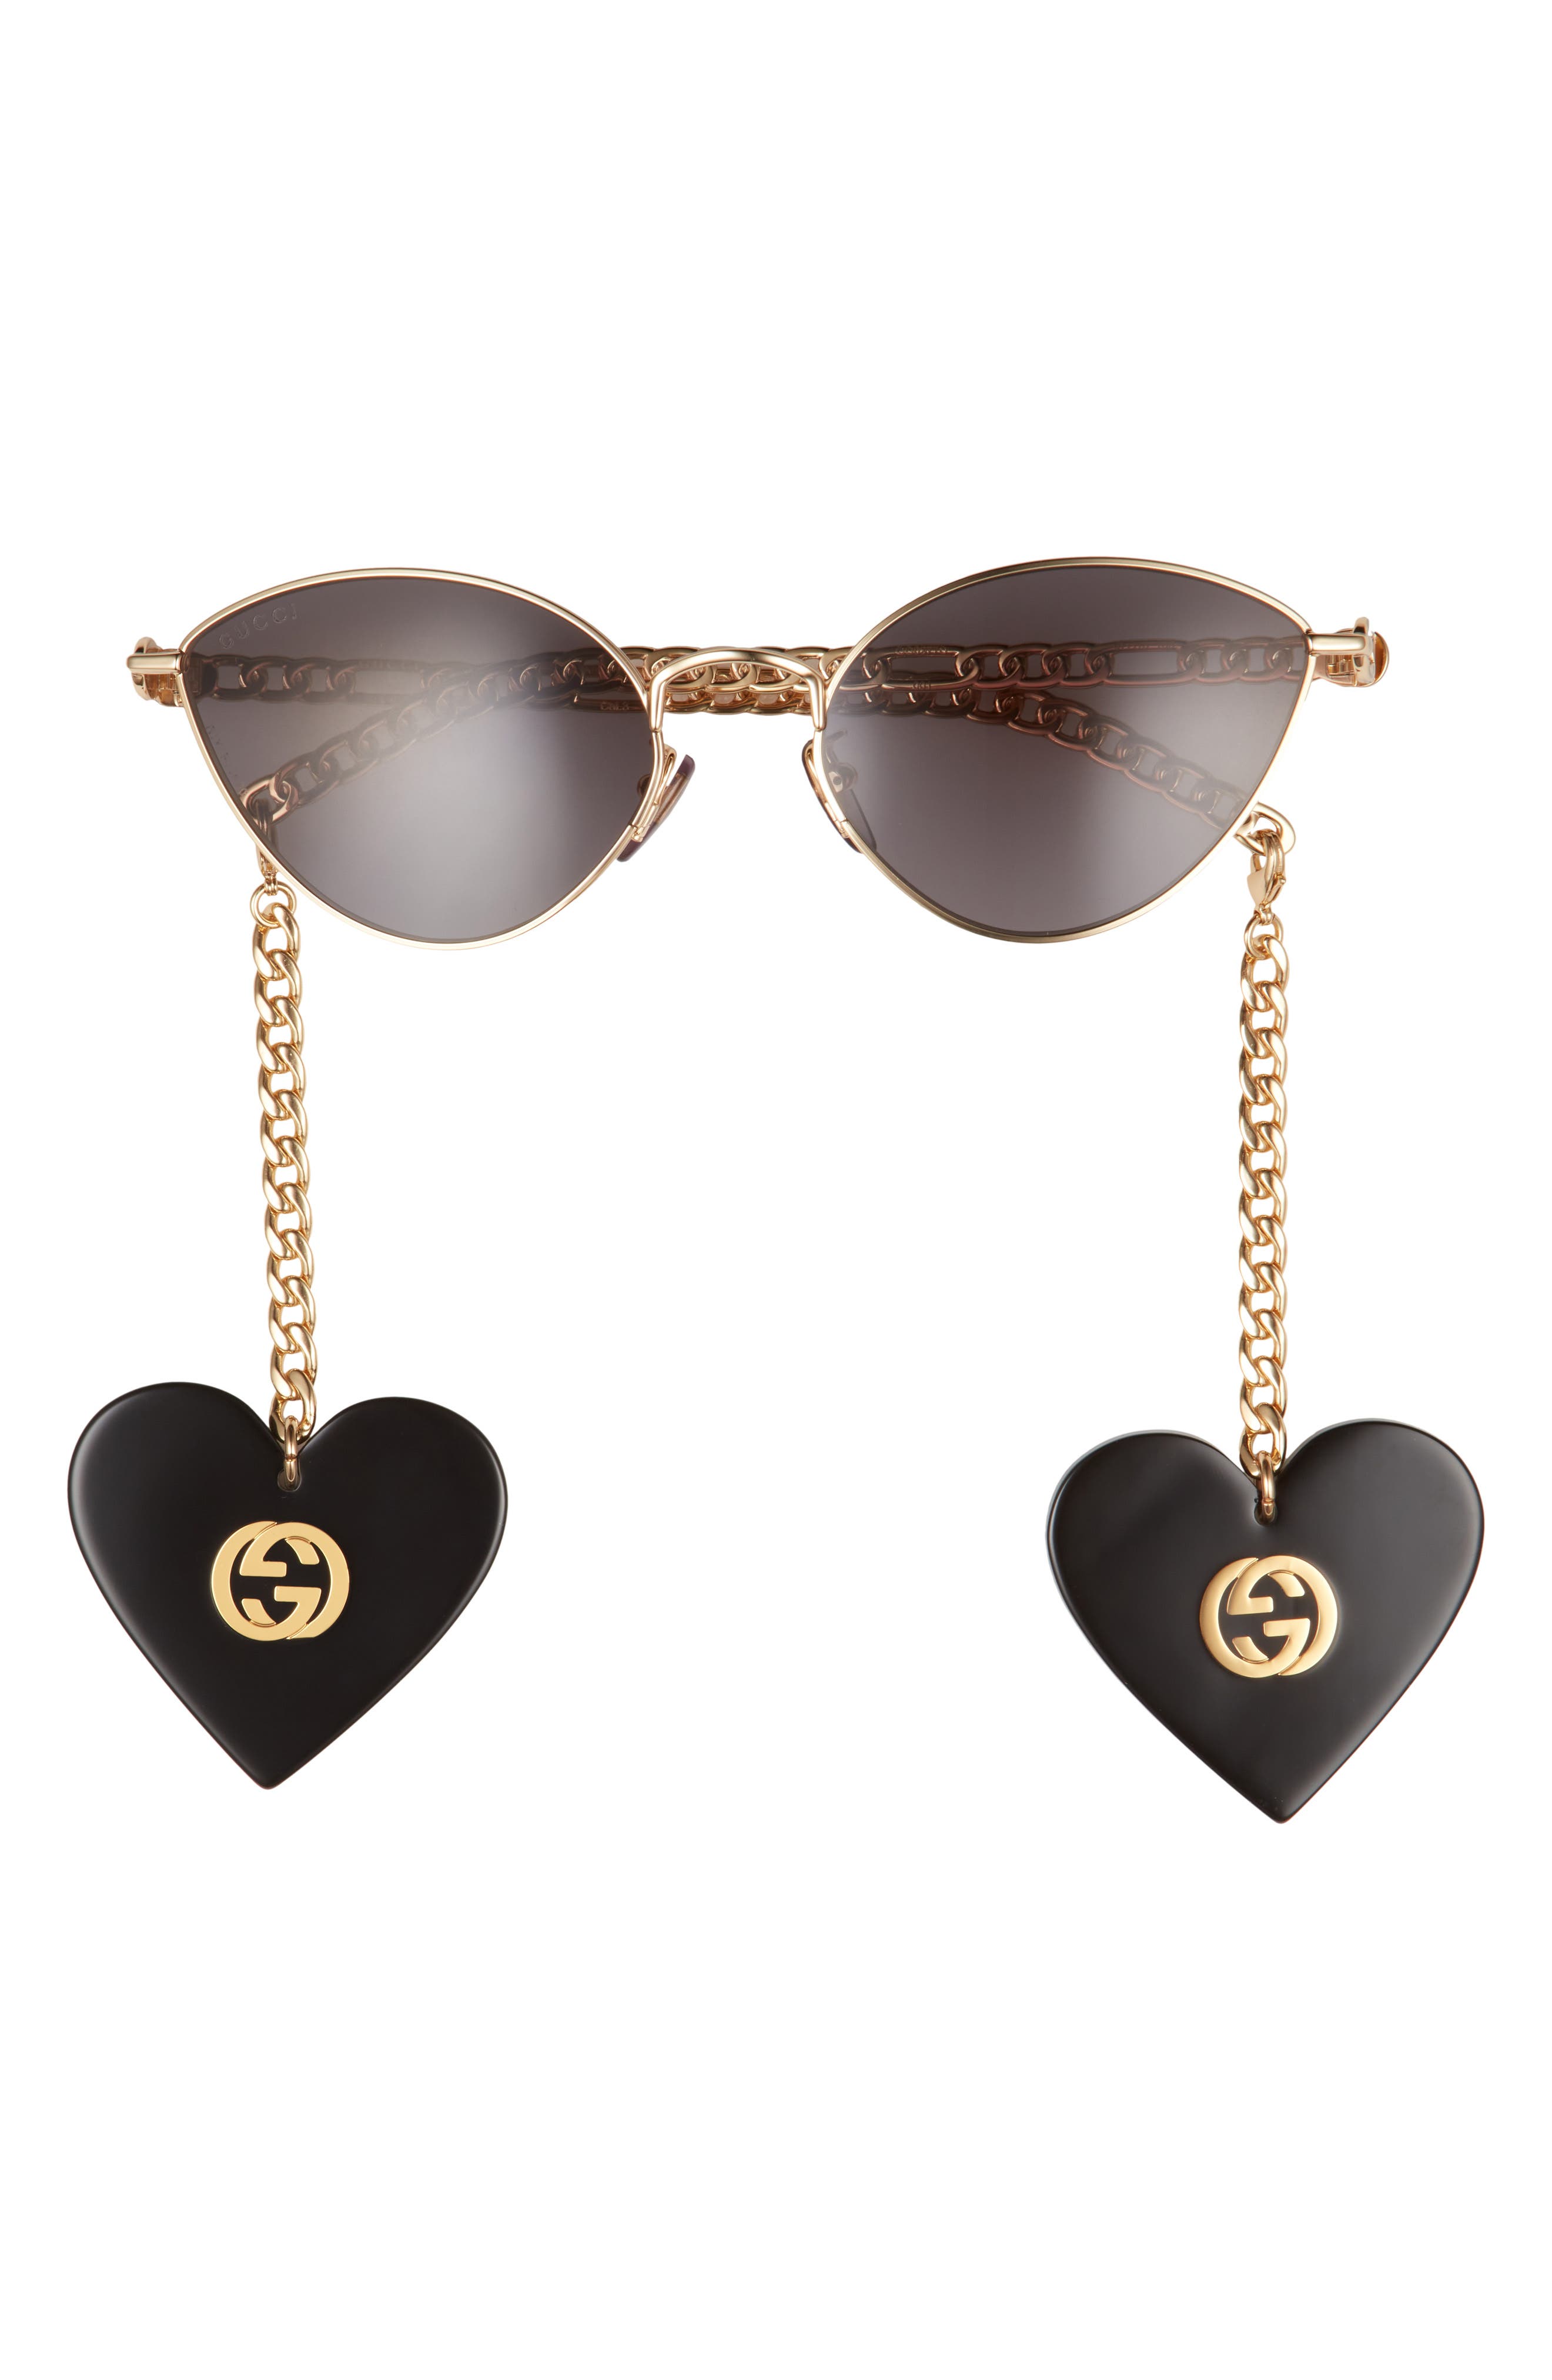 Cat Eye Sunglasses in Gold - Gucci